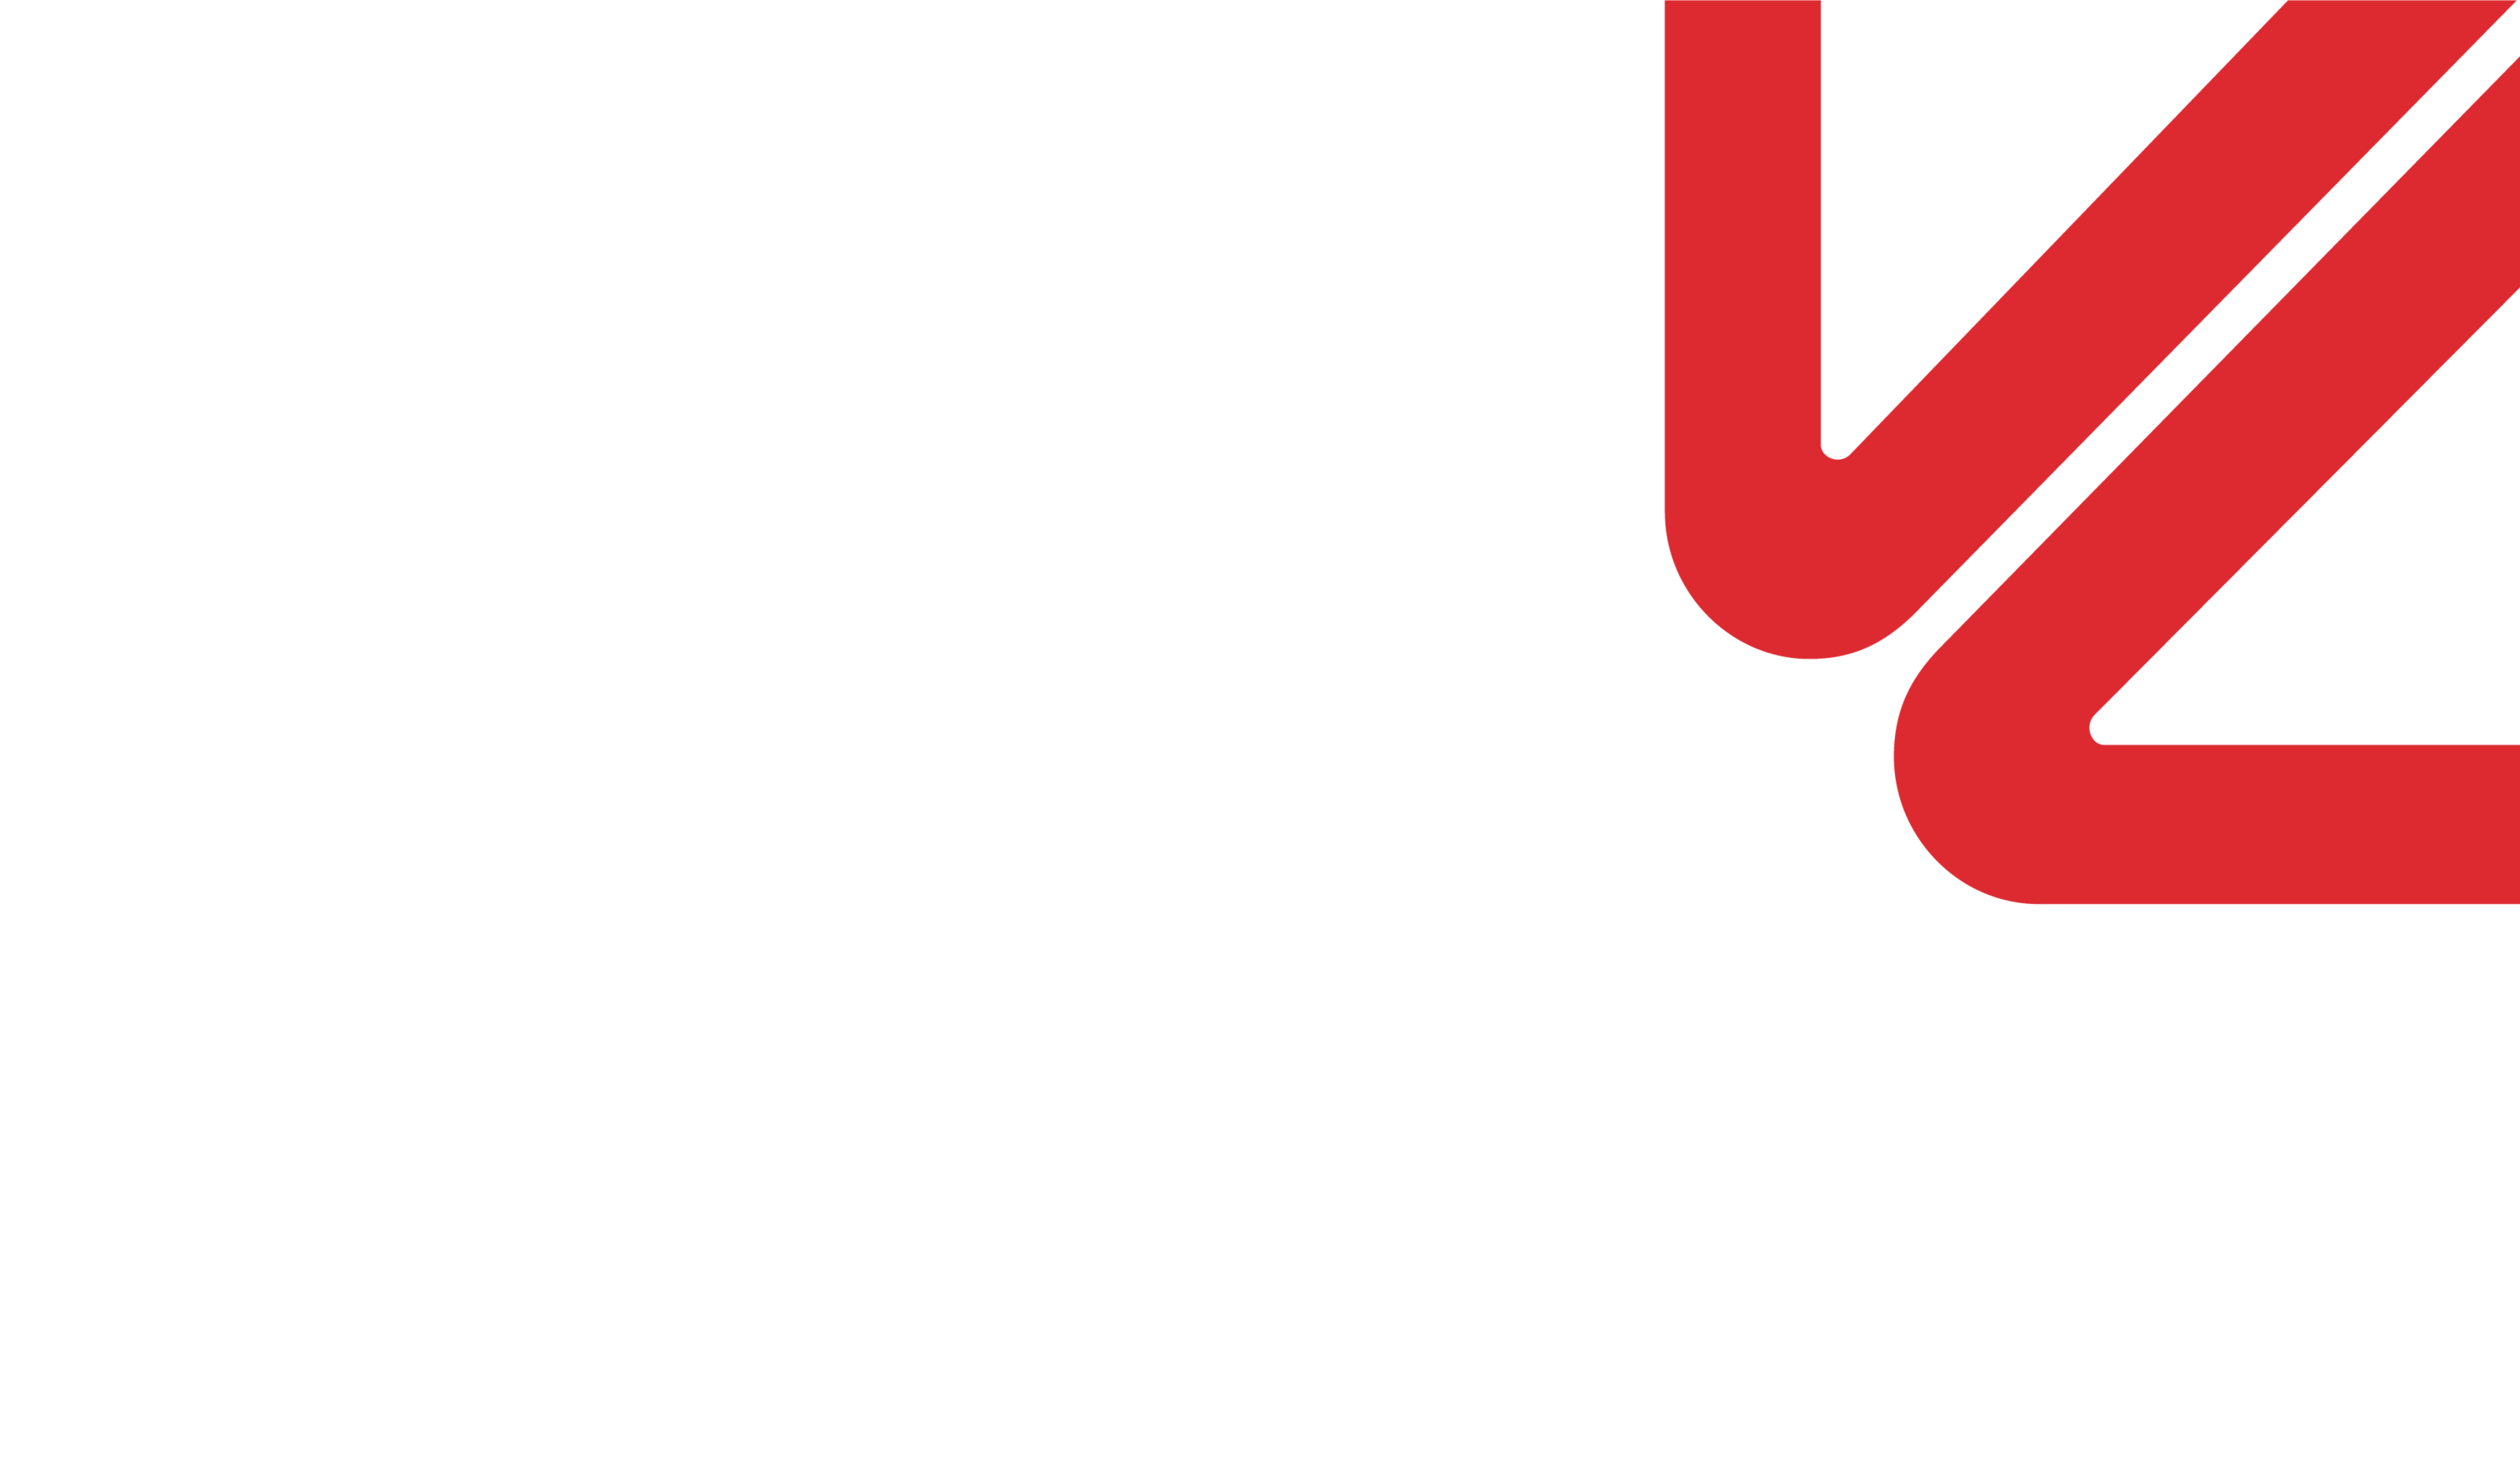 viscom italia 2018 logo